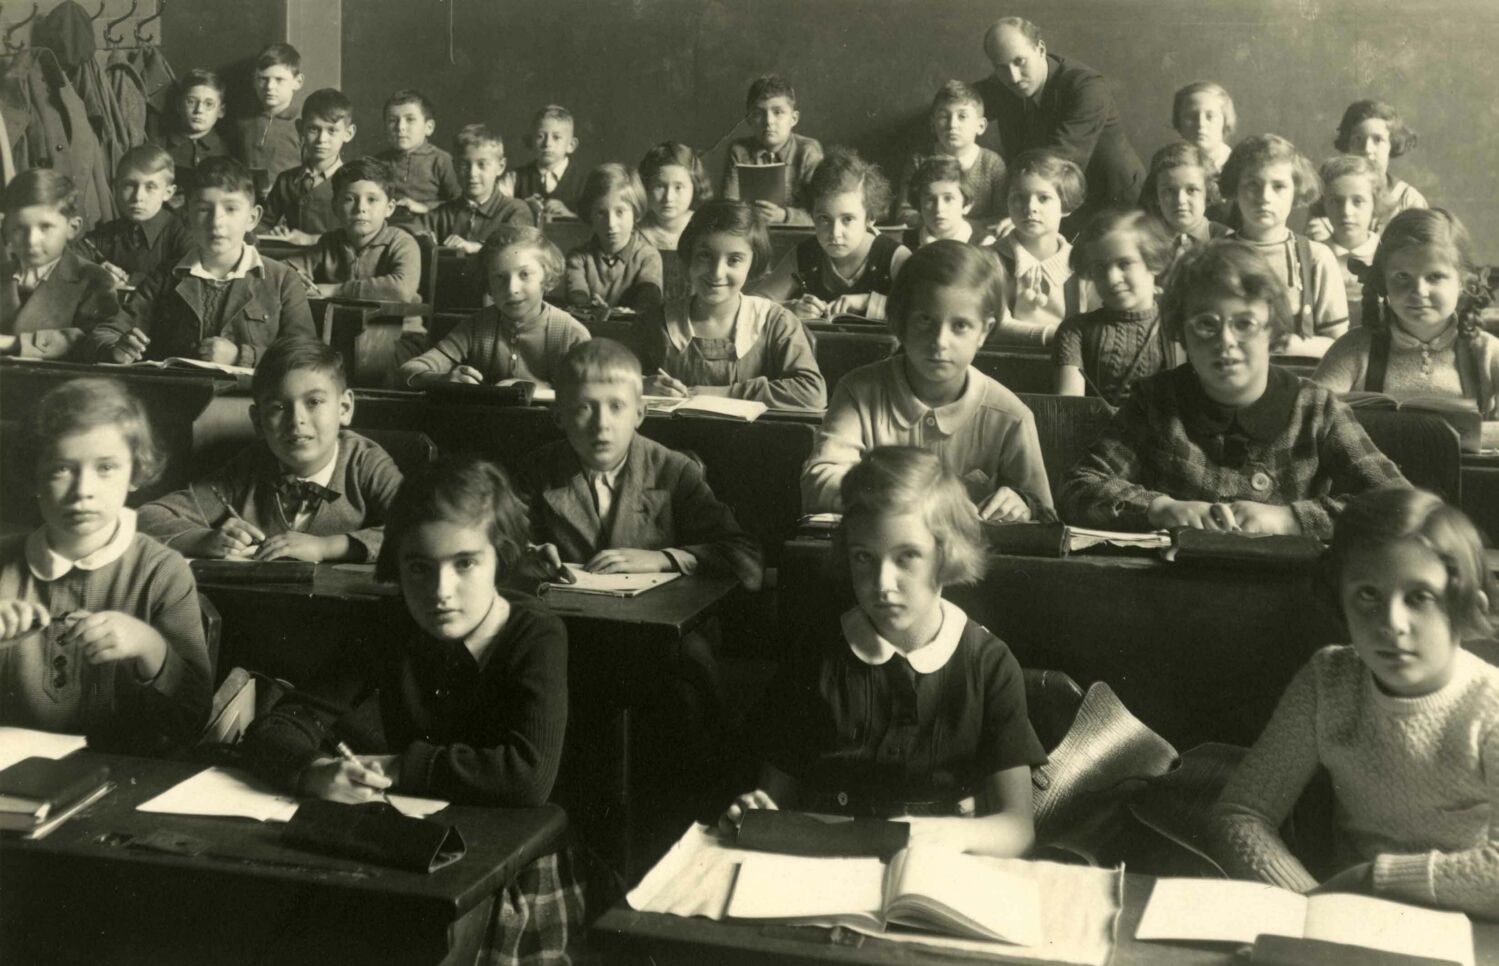 Des élèves assis à leur pupitre fixent l’appareil en souriant. Un enseignant se tient près d'un élève à l'arrière de la classe bondée.